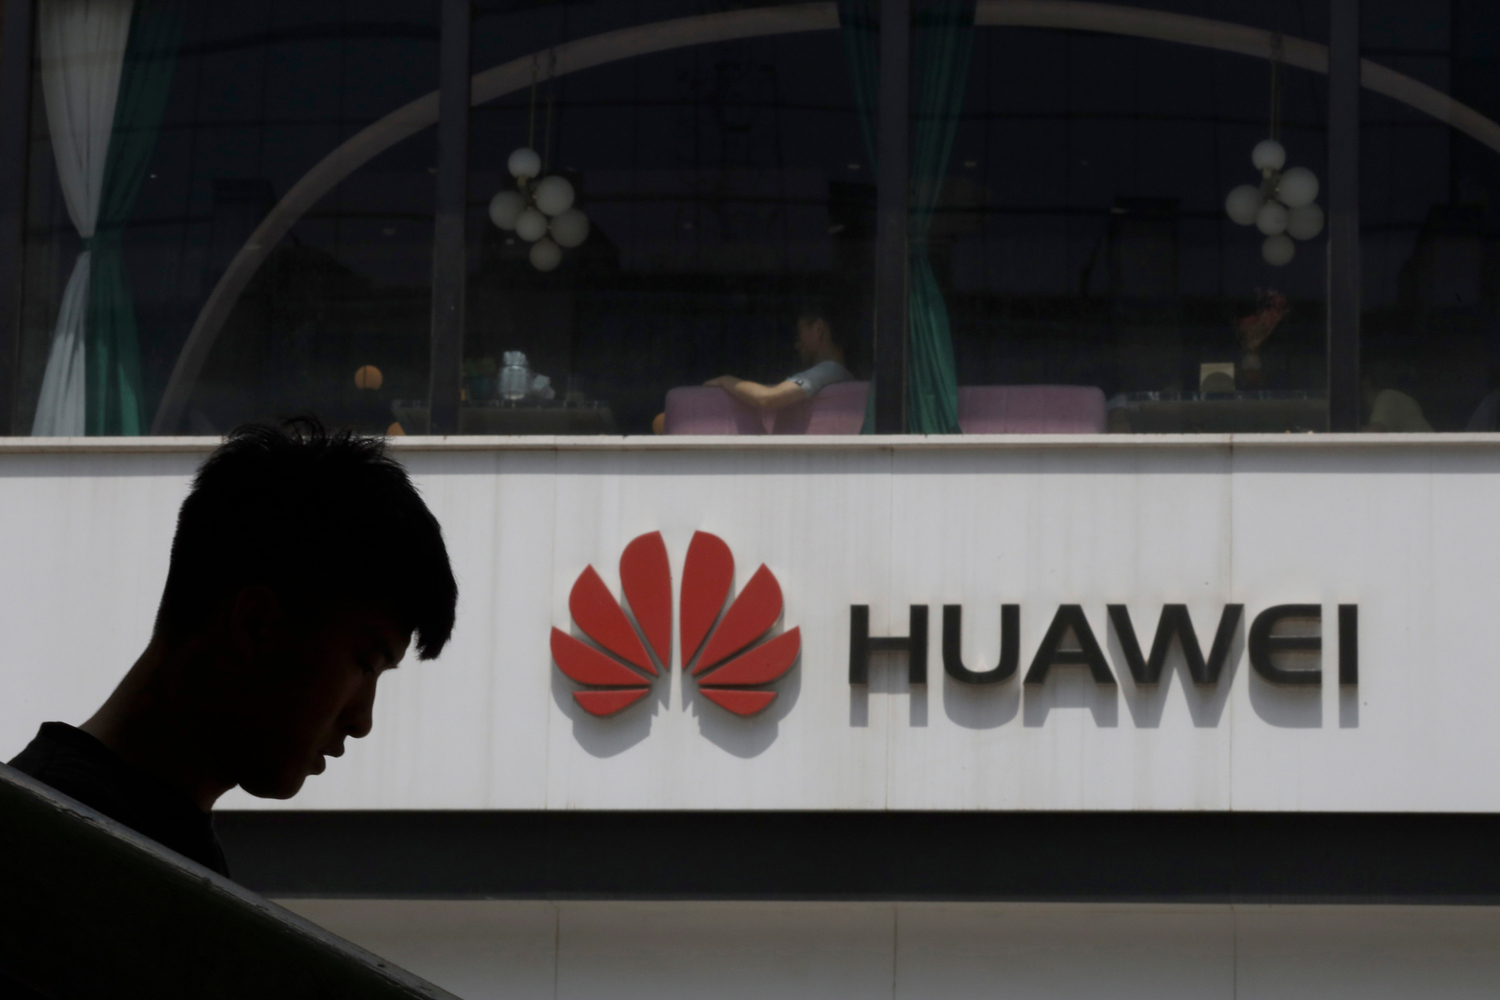 أفادت التقارير أن موظفي شركة Huawei قد ساعدوا الحكومات الأفريقية في التجسس على المعارضة